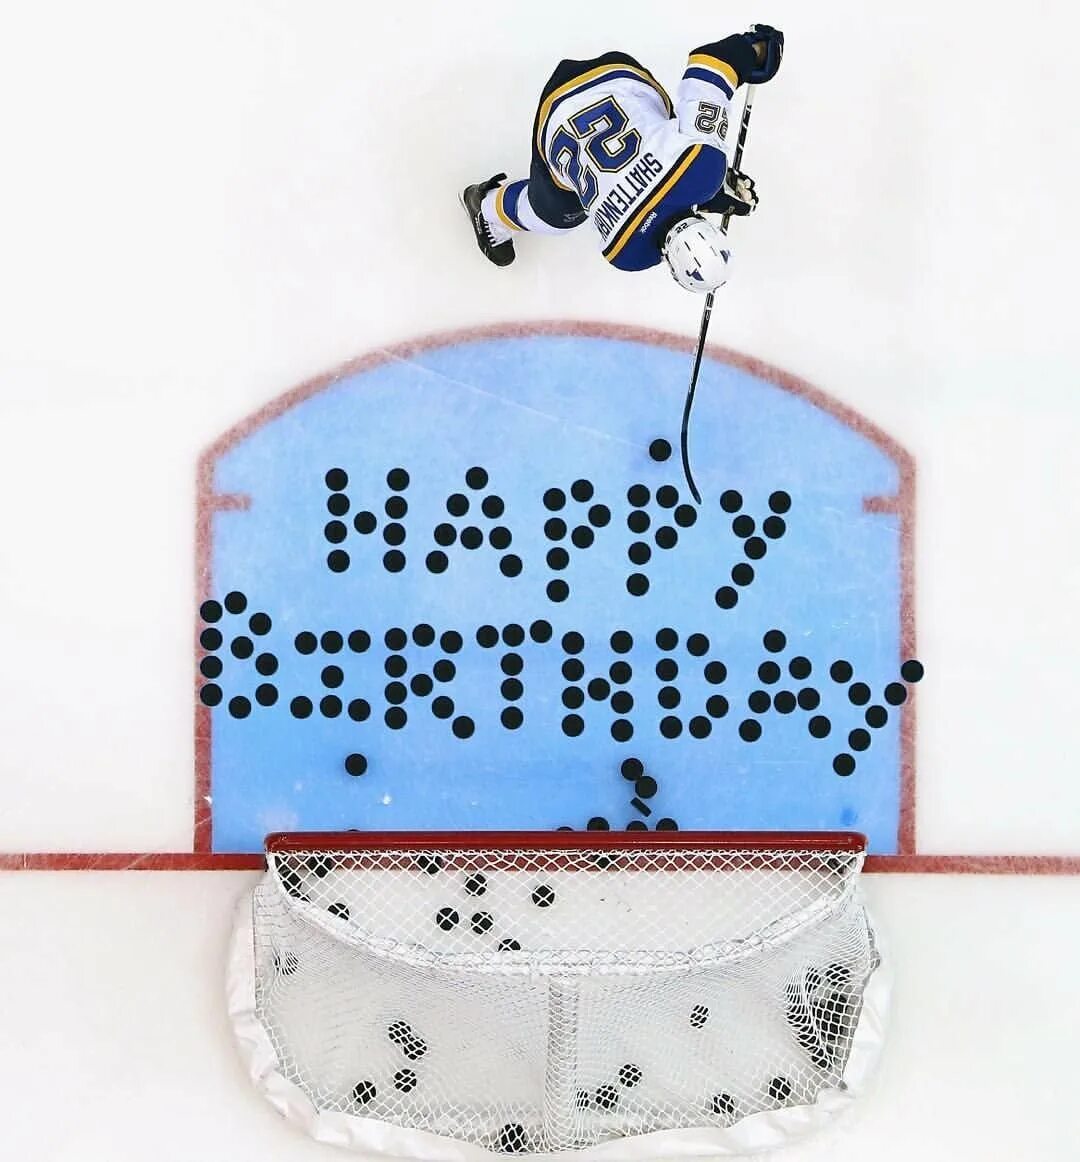 Картинка с днем тренера по хоккею. С днем рождения хоккей. С немрждения хоккеиста. С днем рождения хоккеи та. Поздравление хоккеисту.